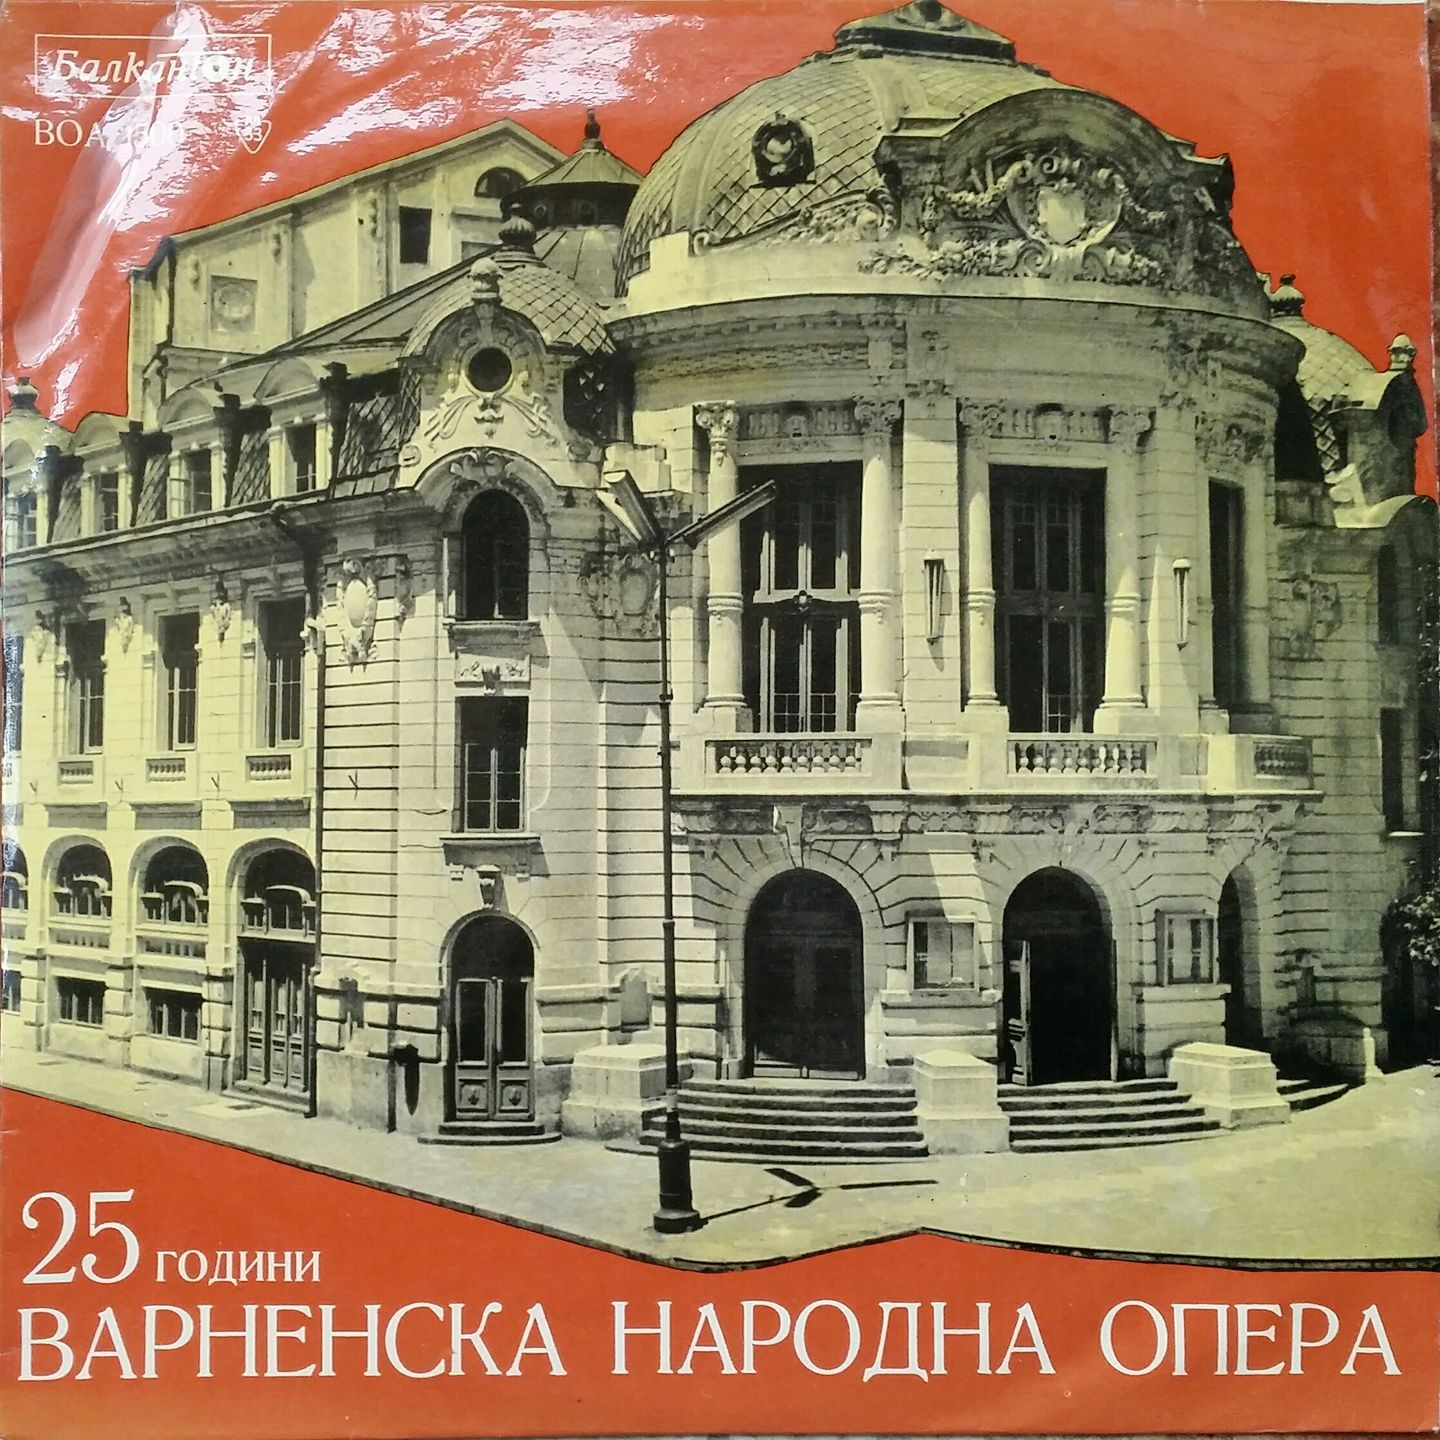 25 години народна опера - Варна